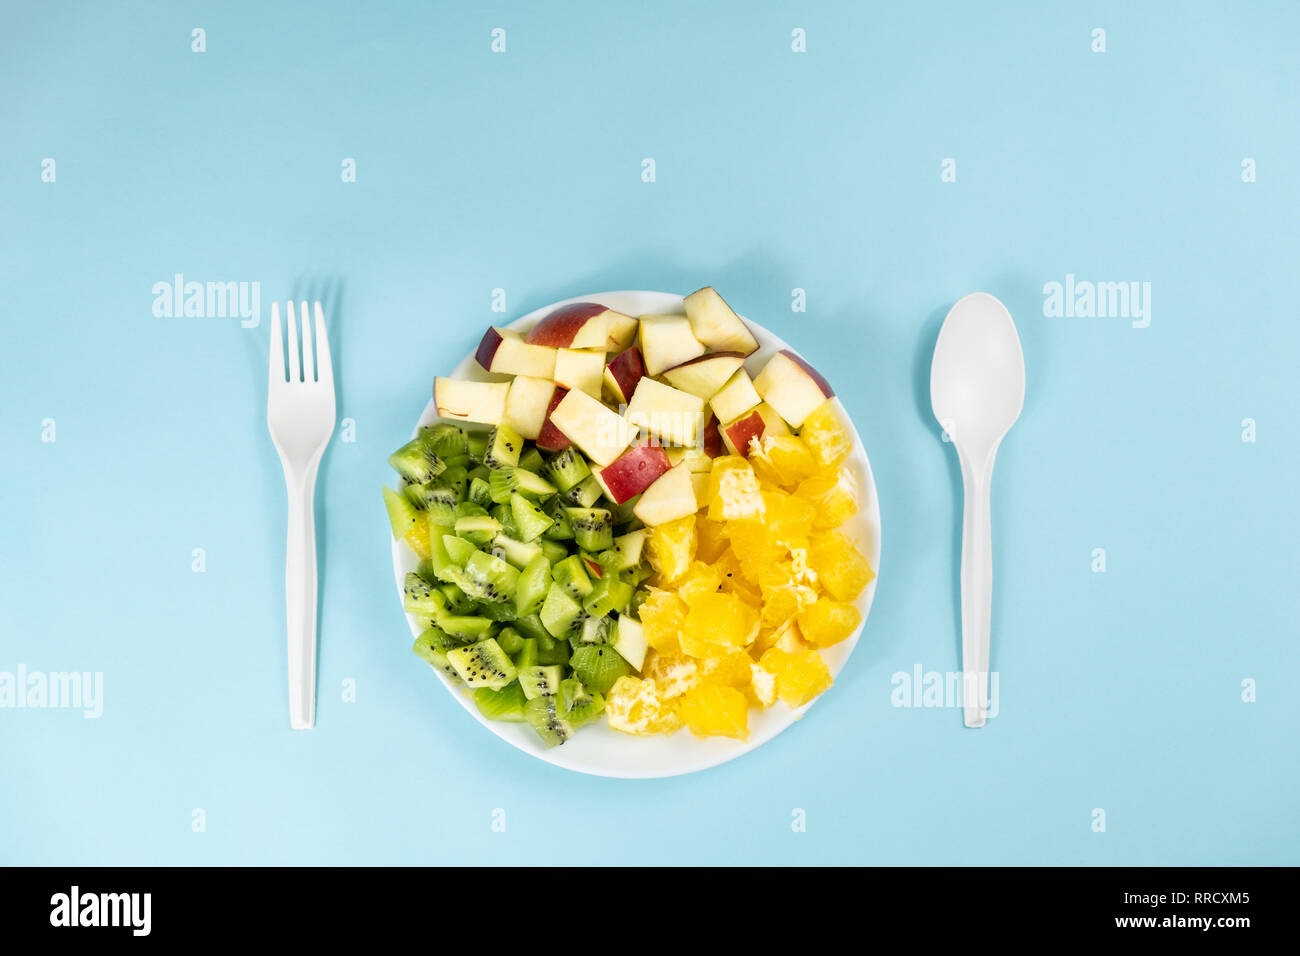 Impianto basato dieta alimentare concetto. Vista superiore della frutta fresca su di una piastra a fondo azzurro con spazio di copia Foto Stock